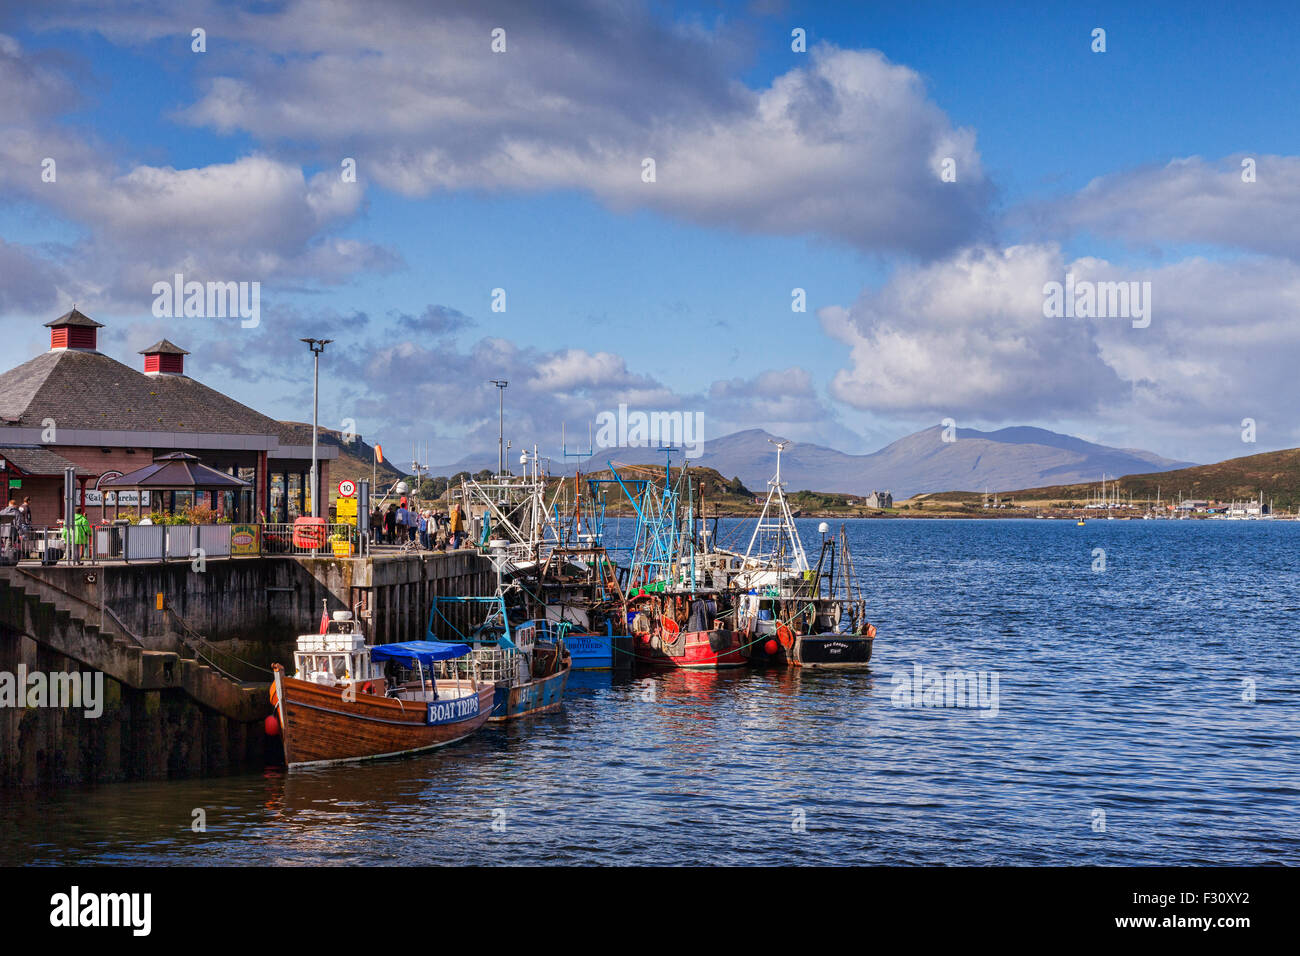 La flotte de pêche d'Oban, Oban, Argyll and Bute, Ecosse, Royaume-Uni. Banque D'Images